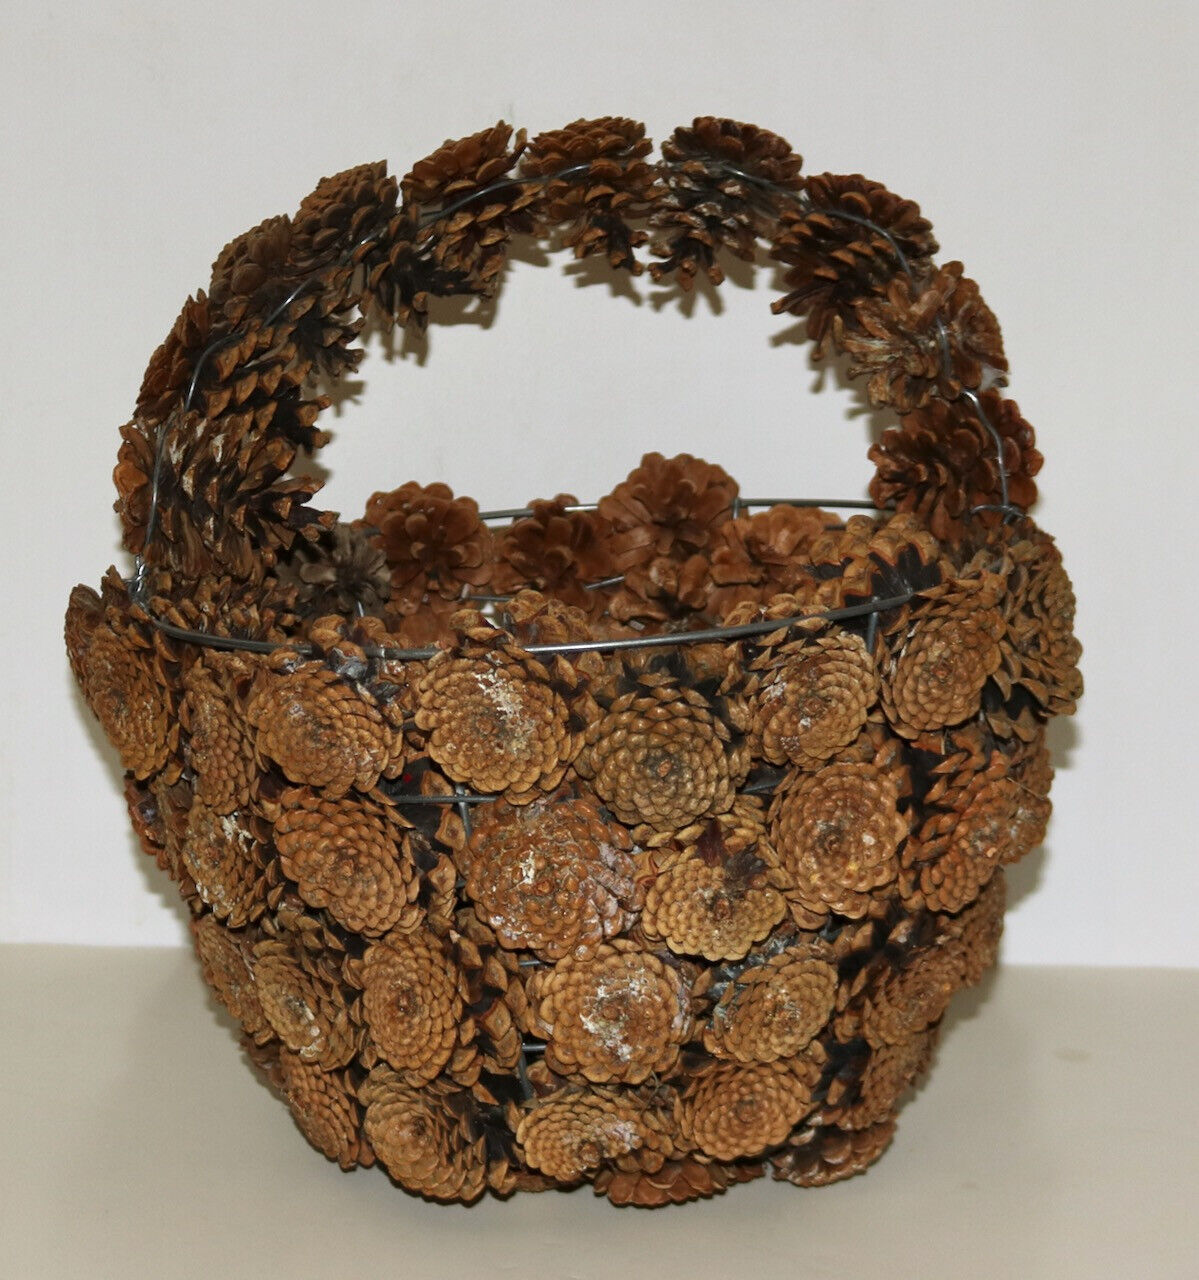 pinecone vintage rustic decorative basket